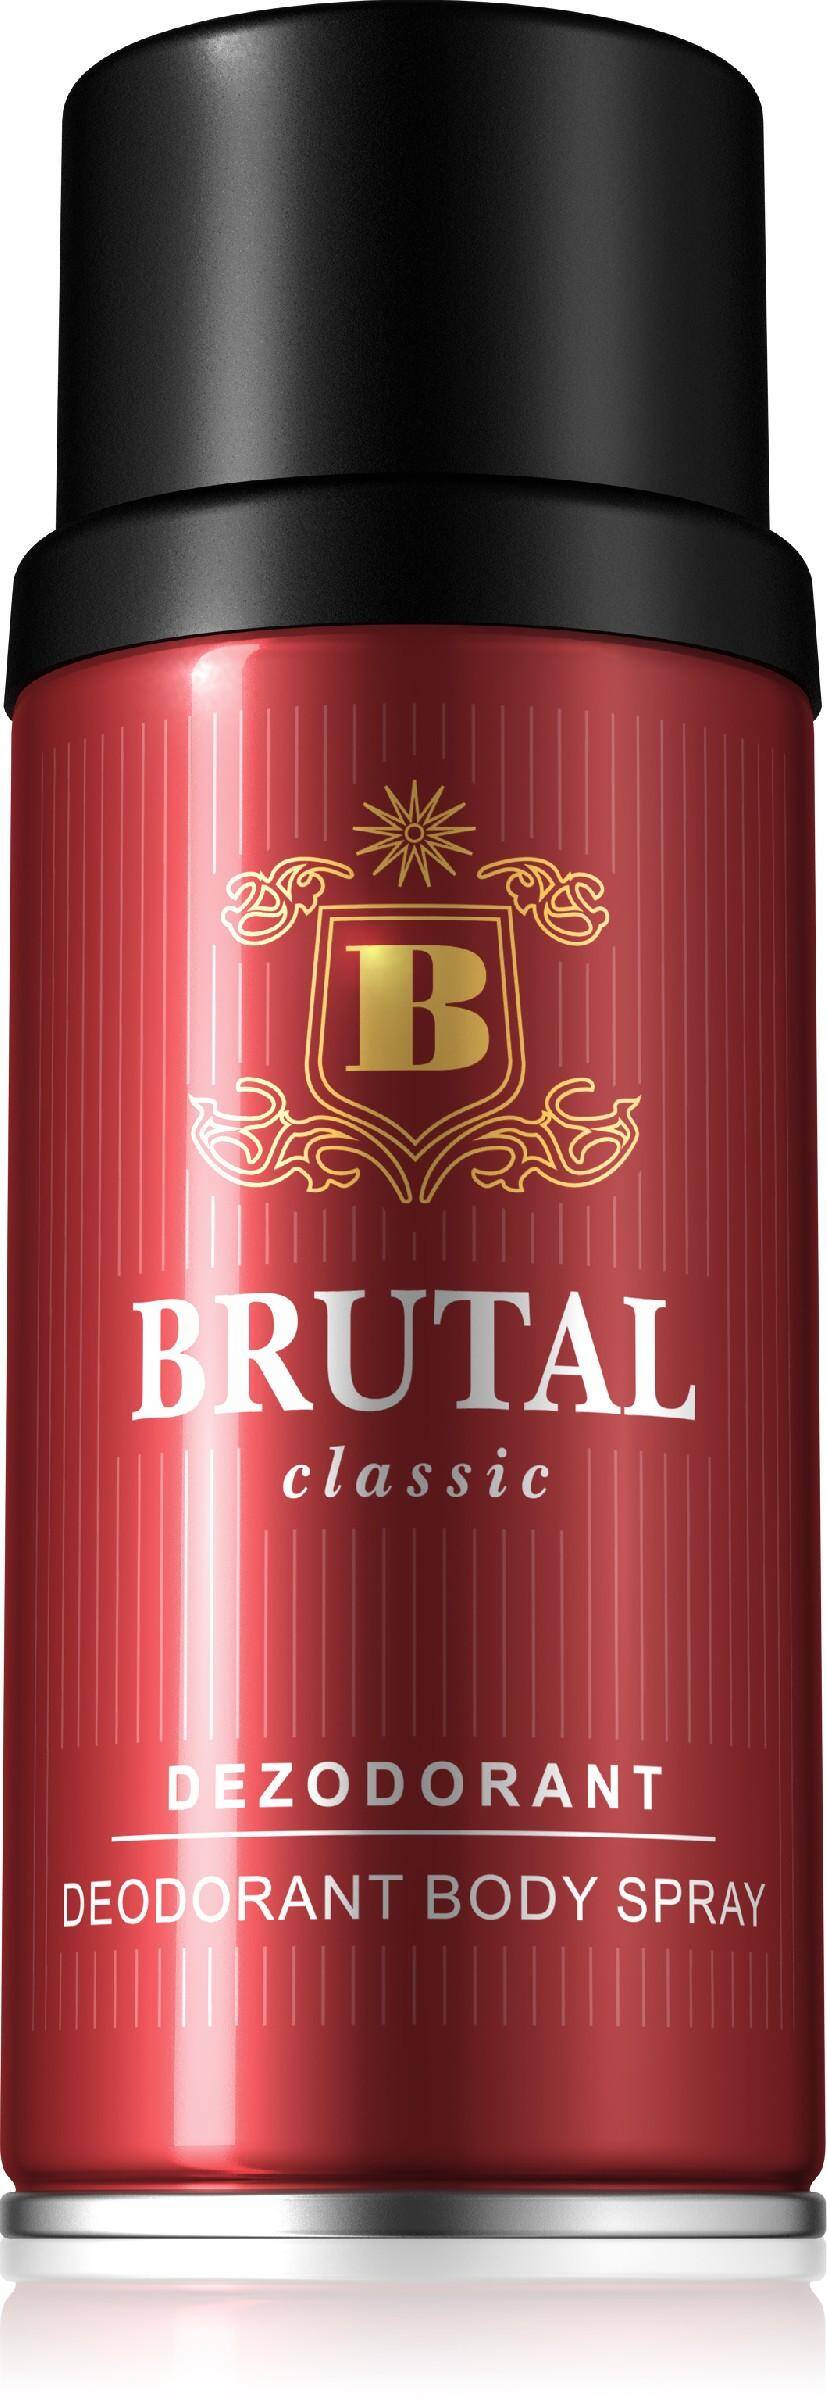 Brutal Classic dezodorant 150ml